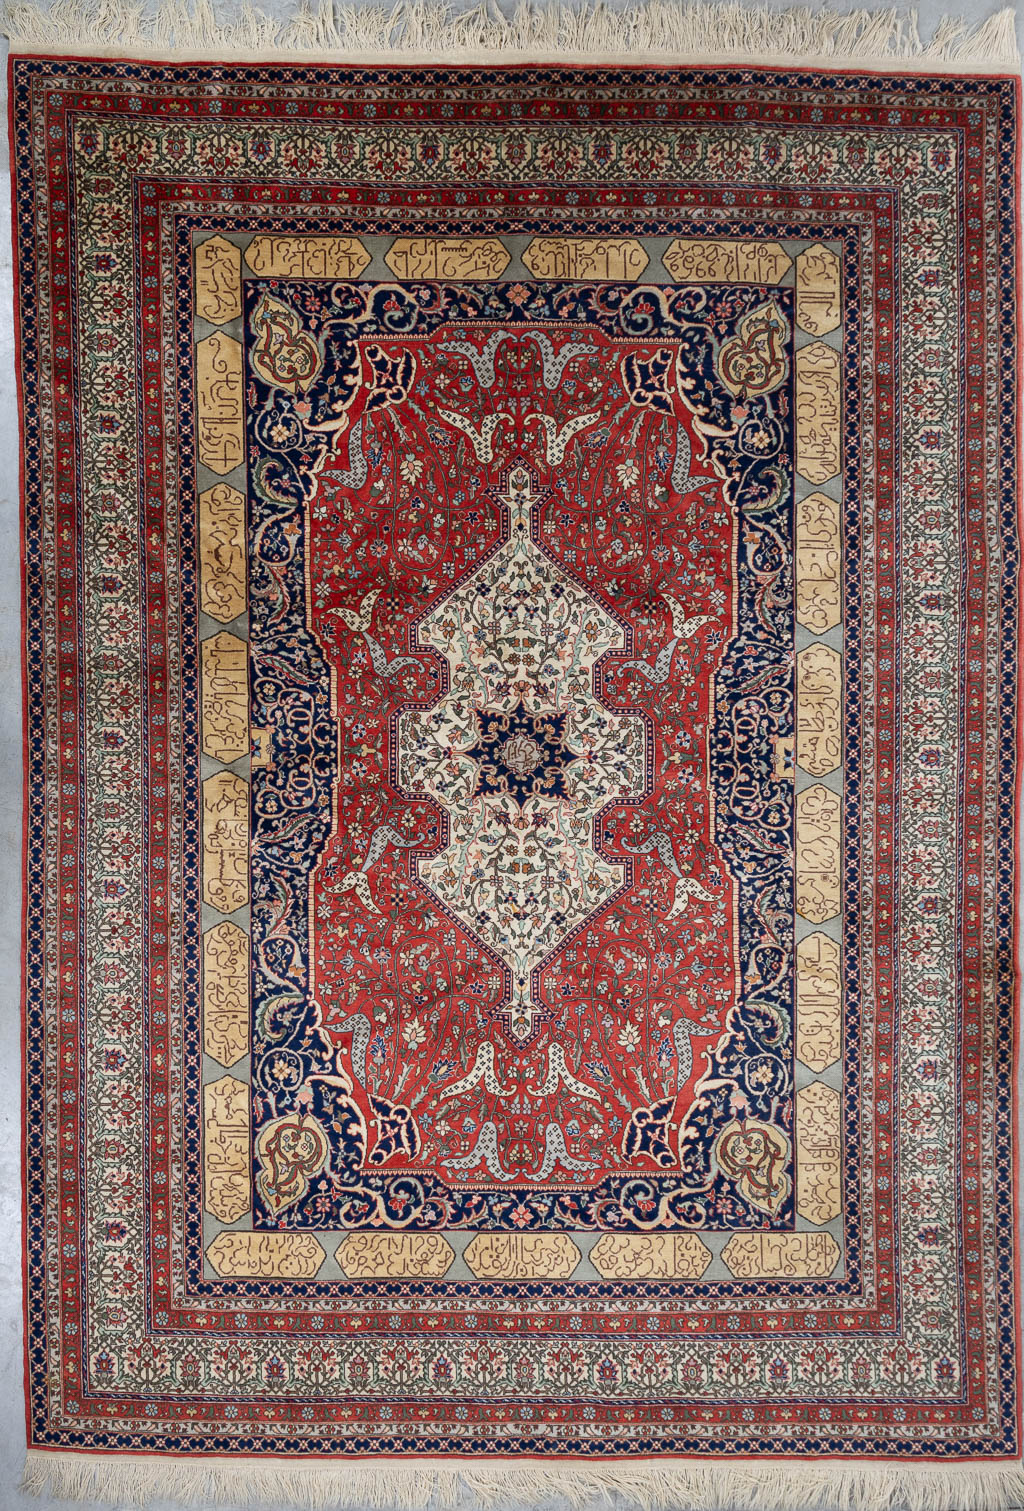 Lot 212 Een Oosters handgeknoopt tapijt met Arabische verzen, Kashan. (L:382 x W:277 cm)